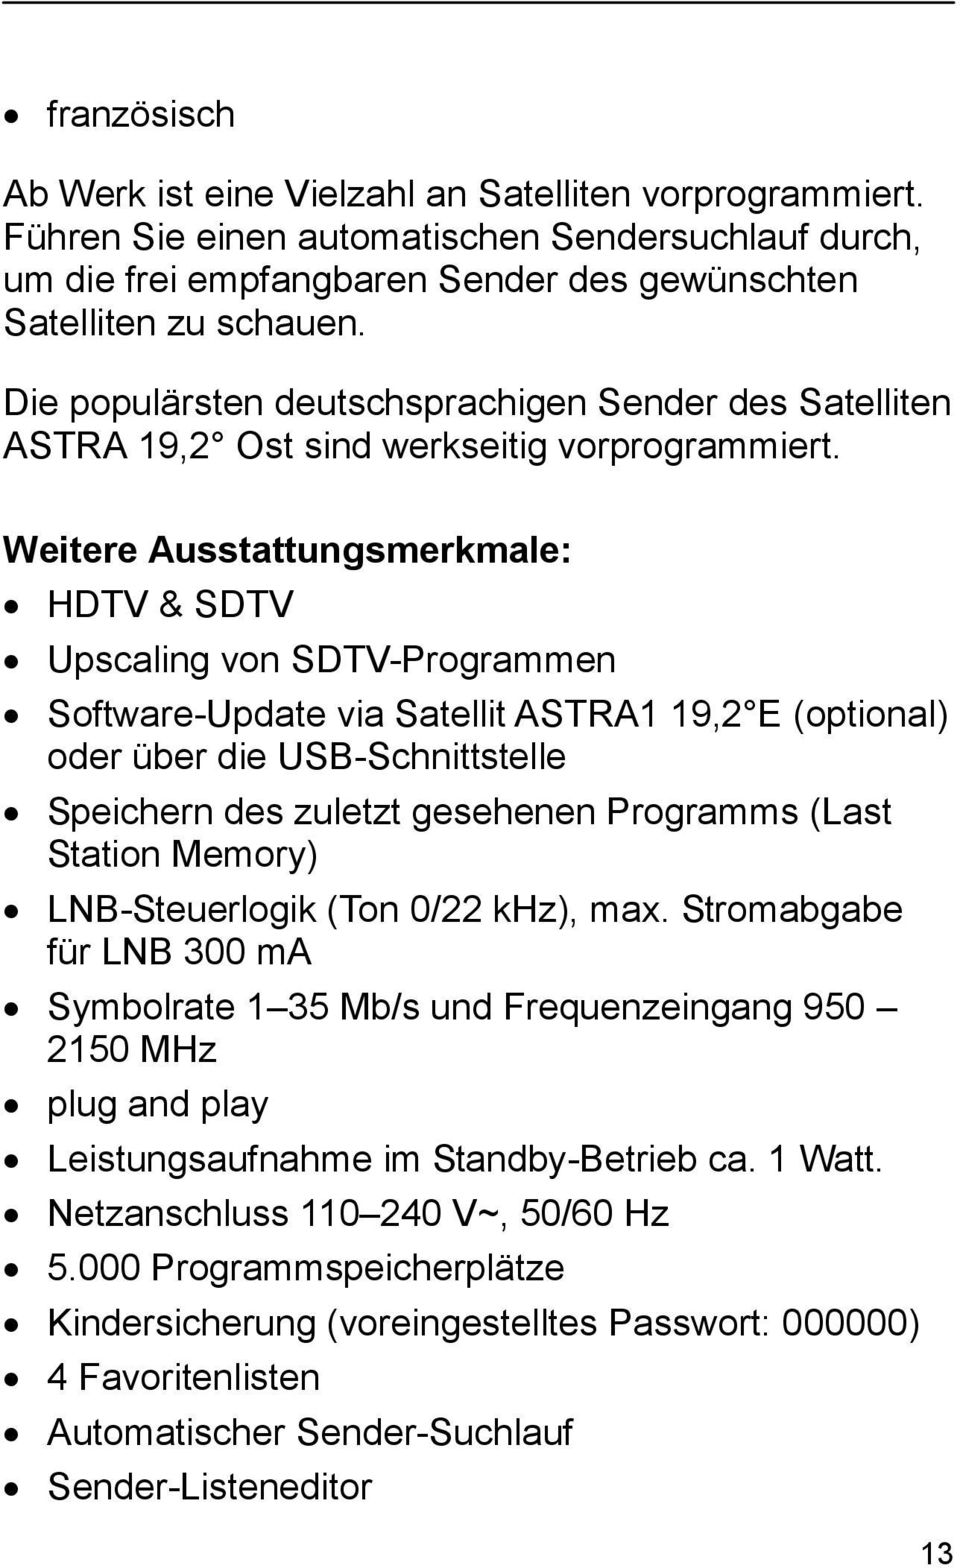 Weitere Ausstattungsmerkmale: HDTV & SDTV Upscaling von SDTV-Programmen Software-Update via Satellit ASTRA1 19,2 E (optional) oder über die USB-Schnittstelle Speichern des zuletzt gesehenen Programms